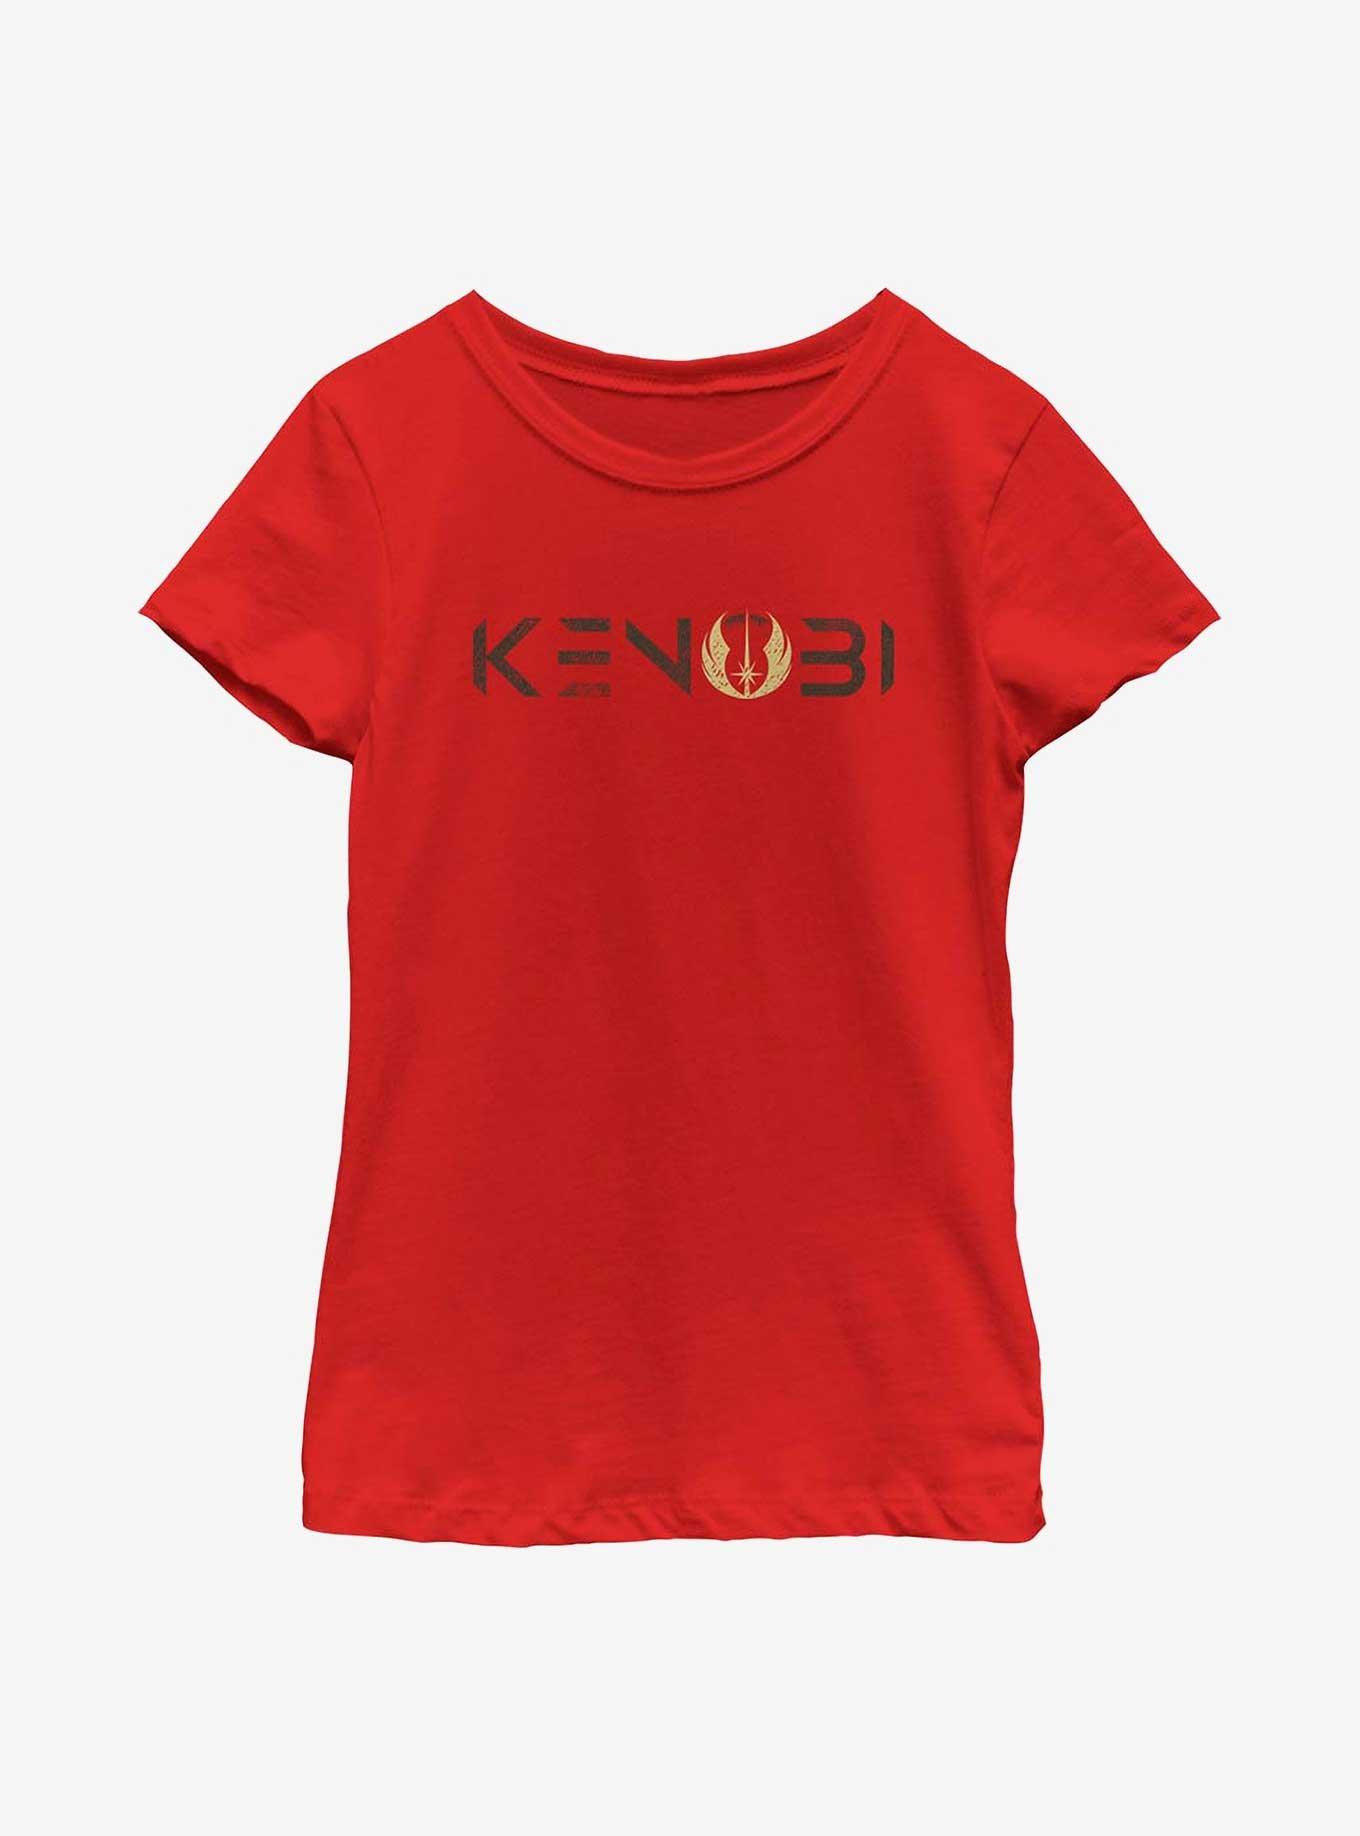 Star Wars Obi-Wan Kenobi Logo Youth Girls T-Shirt, RED, hi-res